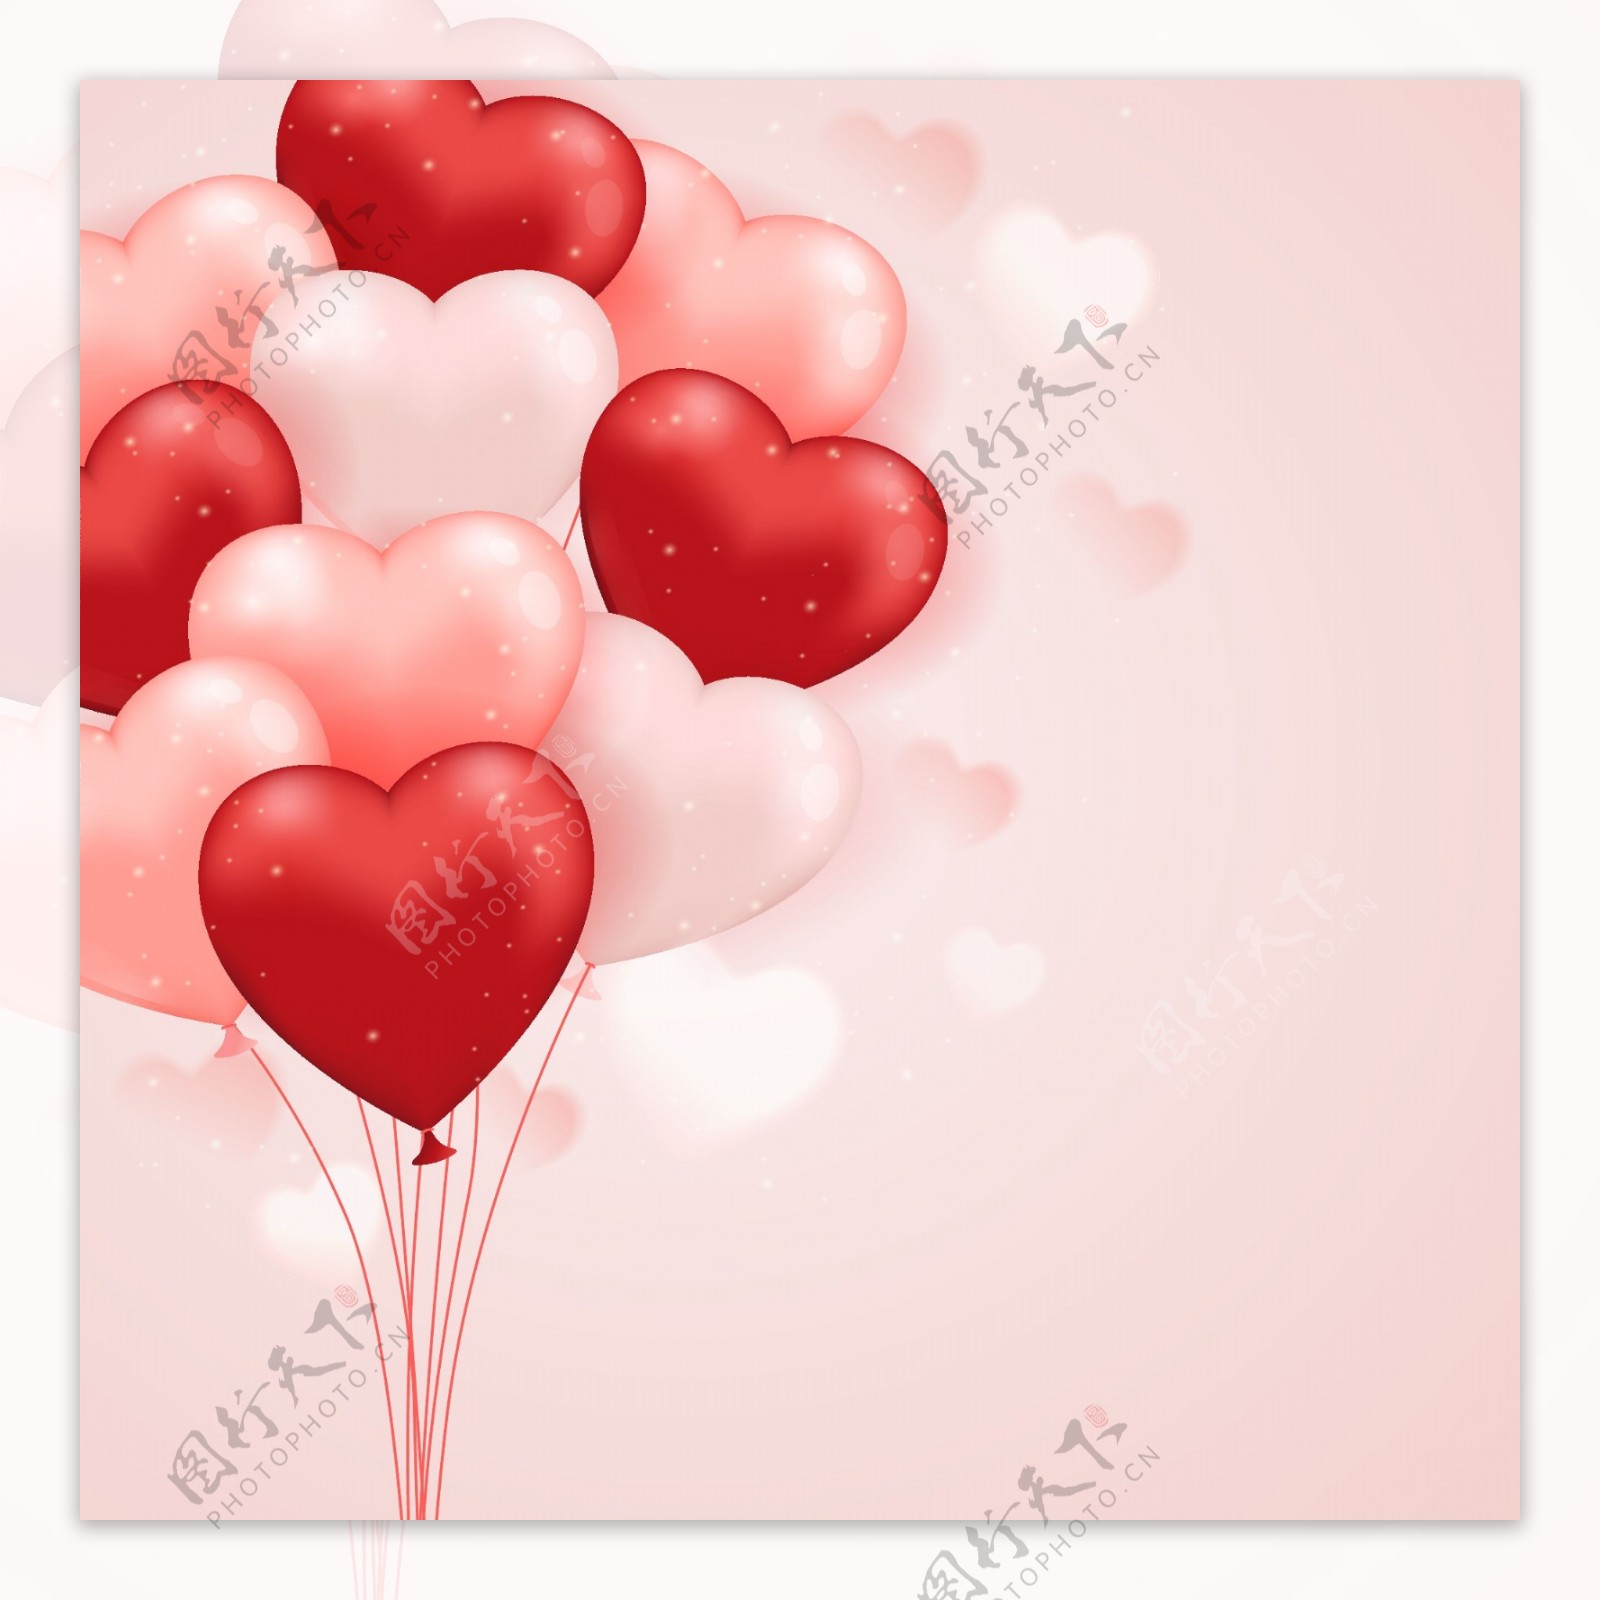 白色和红色爱心气球束矢量素材